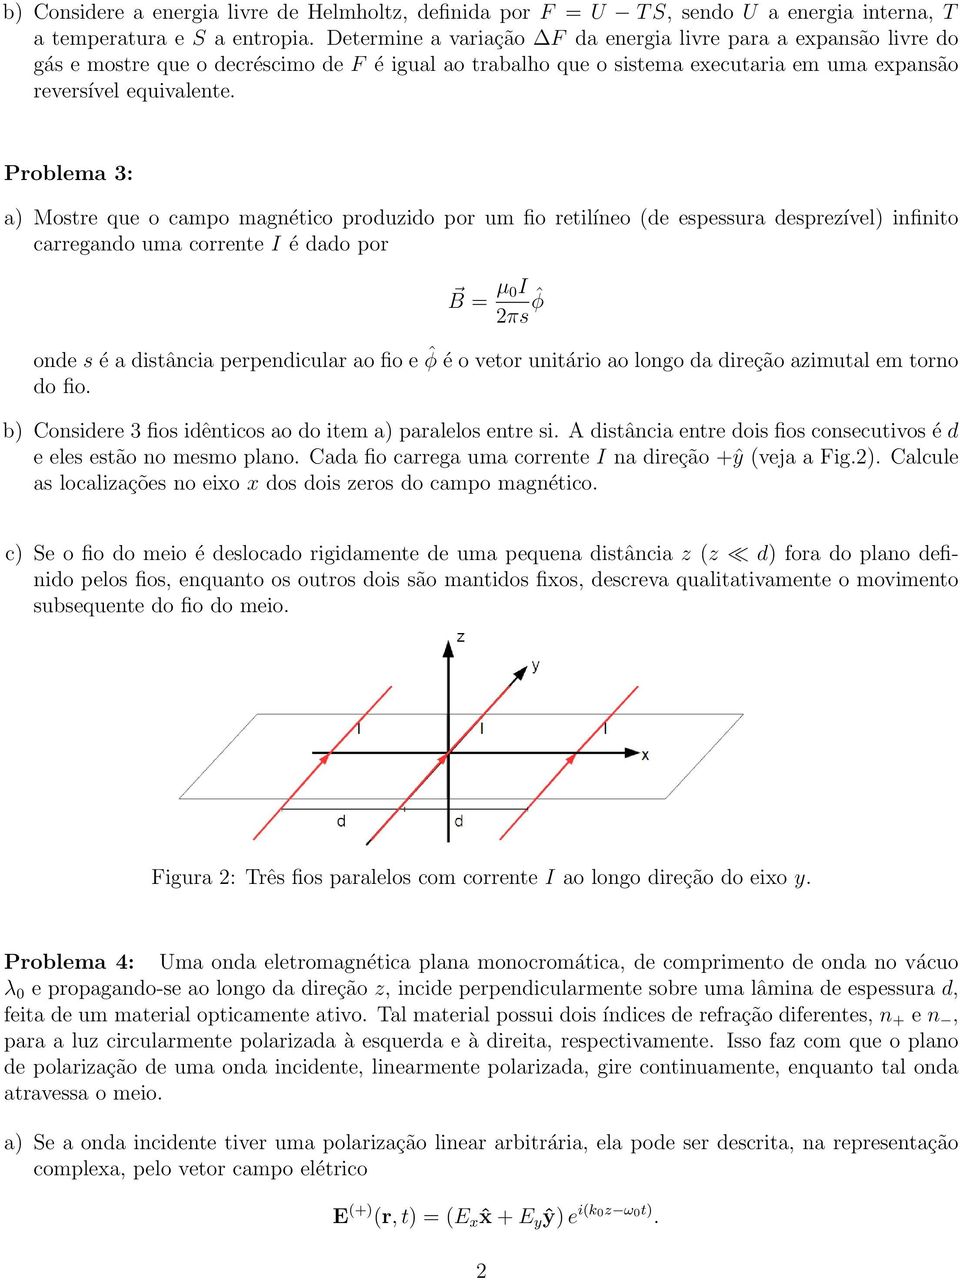 Problema 3: a) Mostre que o campo magnético produzido por um fio retilíneo (de espessura desprezível) infinito carregando uma corrente I é dado por B = µ 0I 2πs ˆφ onde s é a distância perpendicular